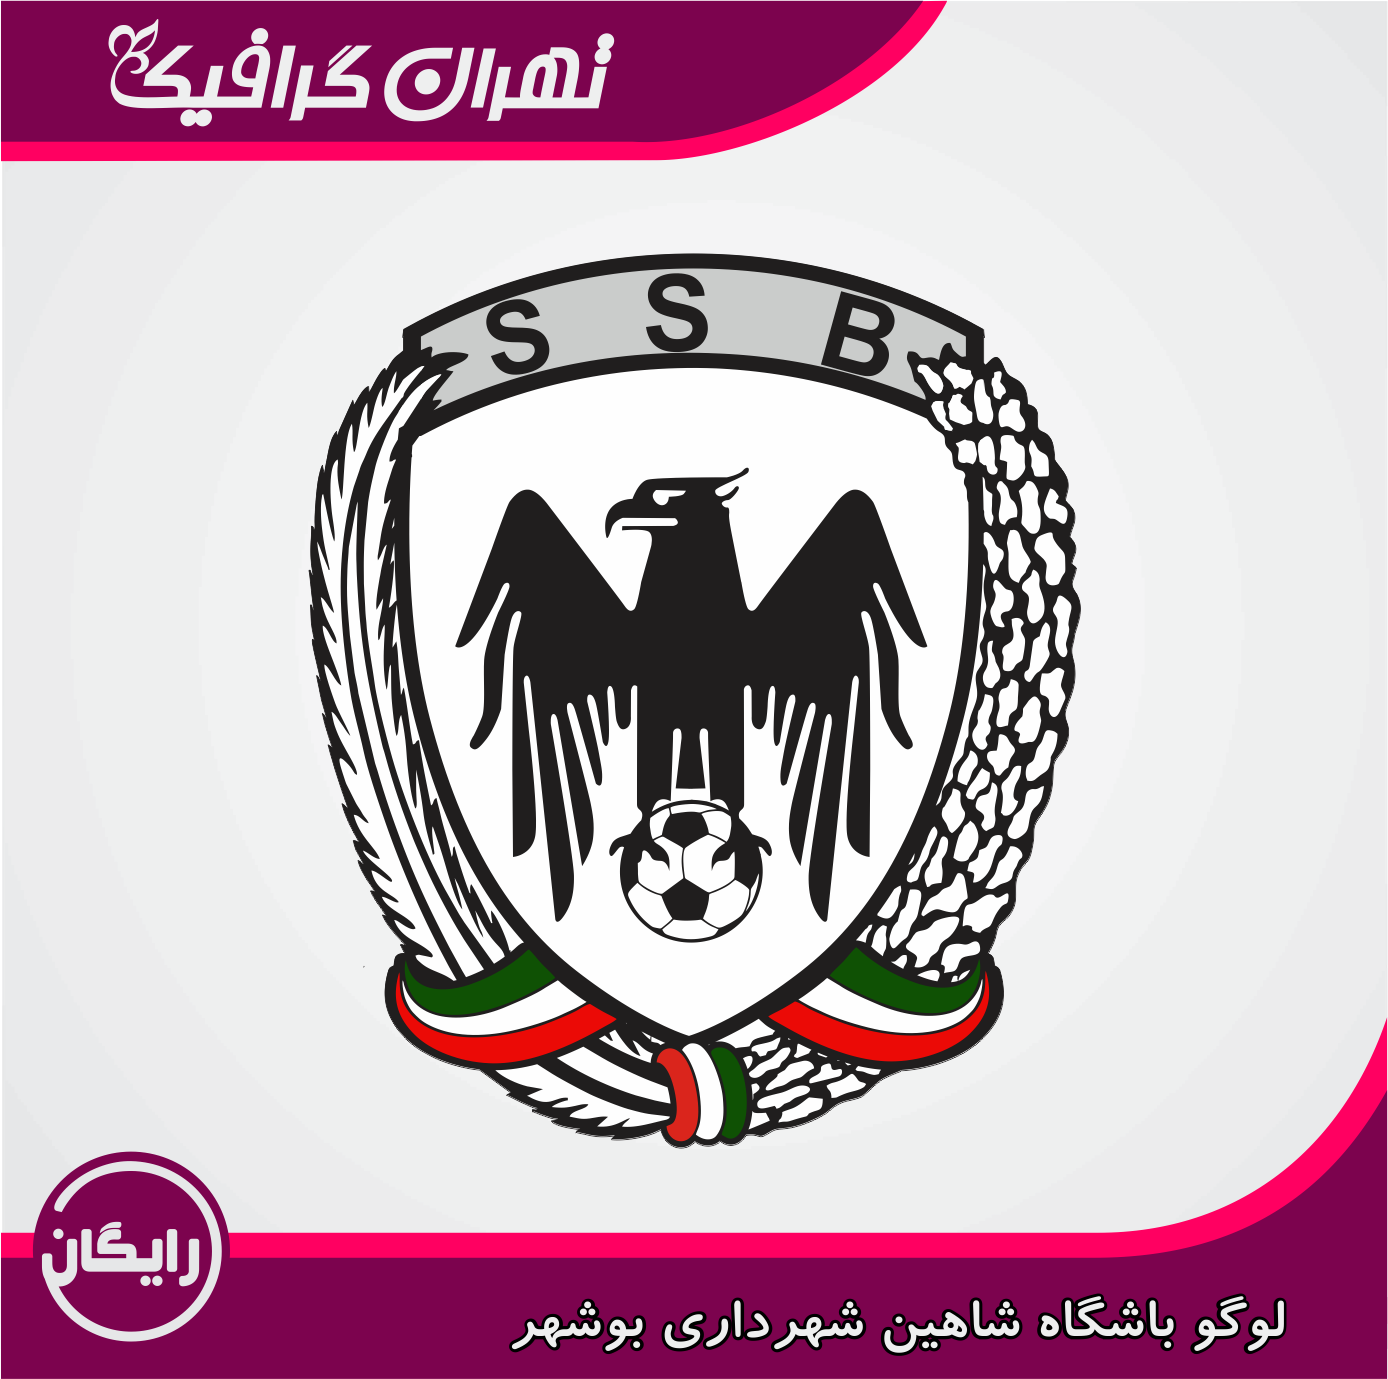 لوگو باشگاه شاهین بوشهر